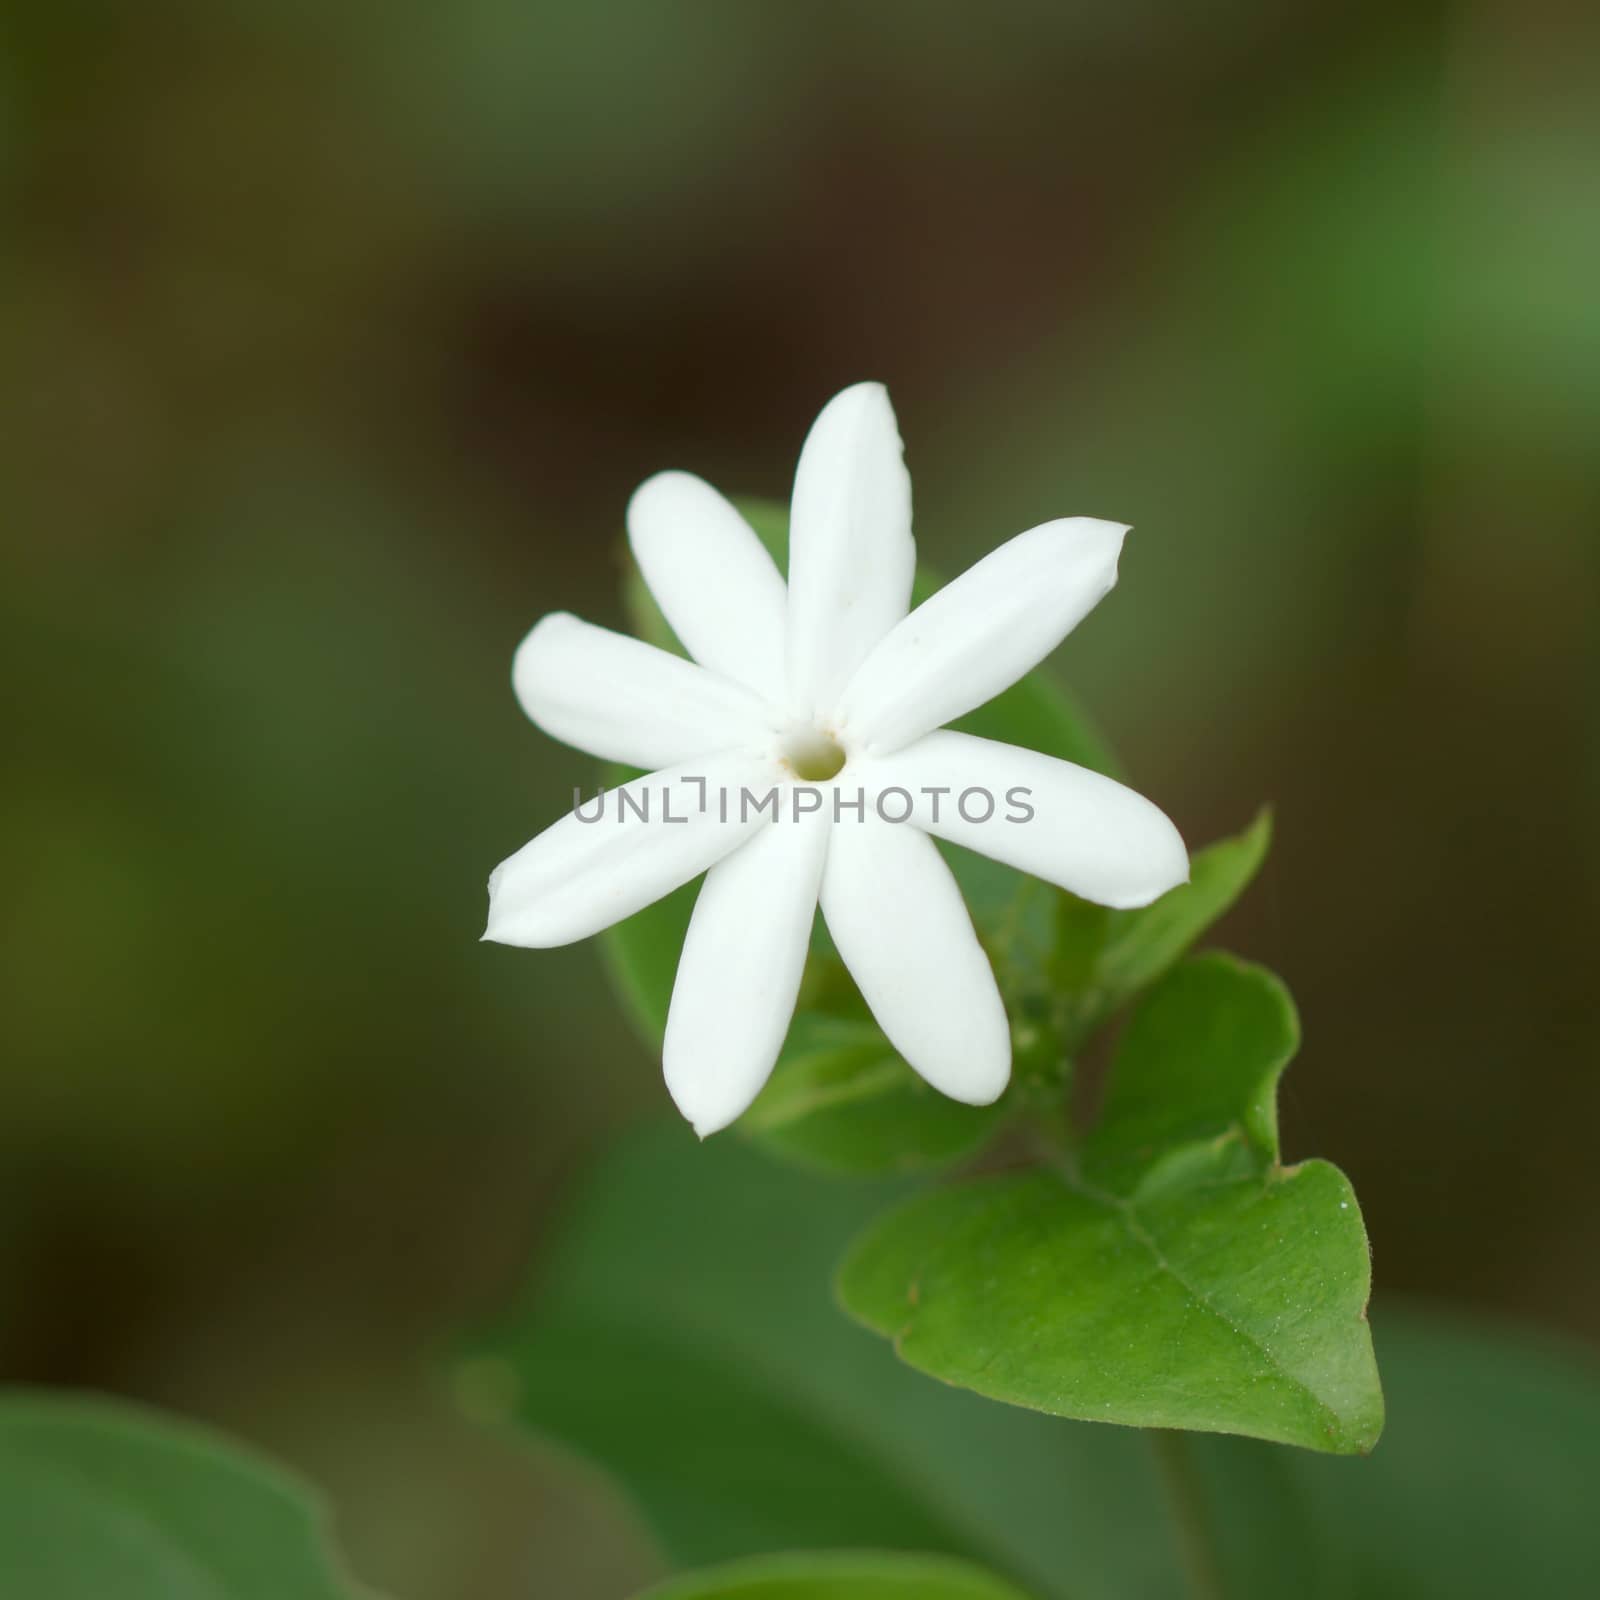 One White Jasmine Flower by Noppharat_th